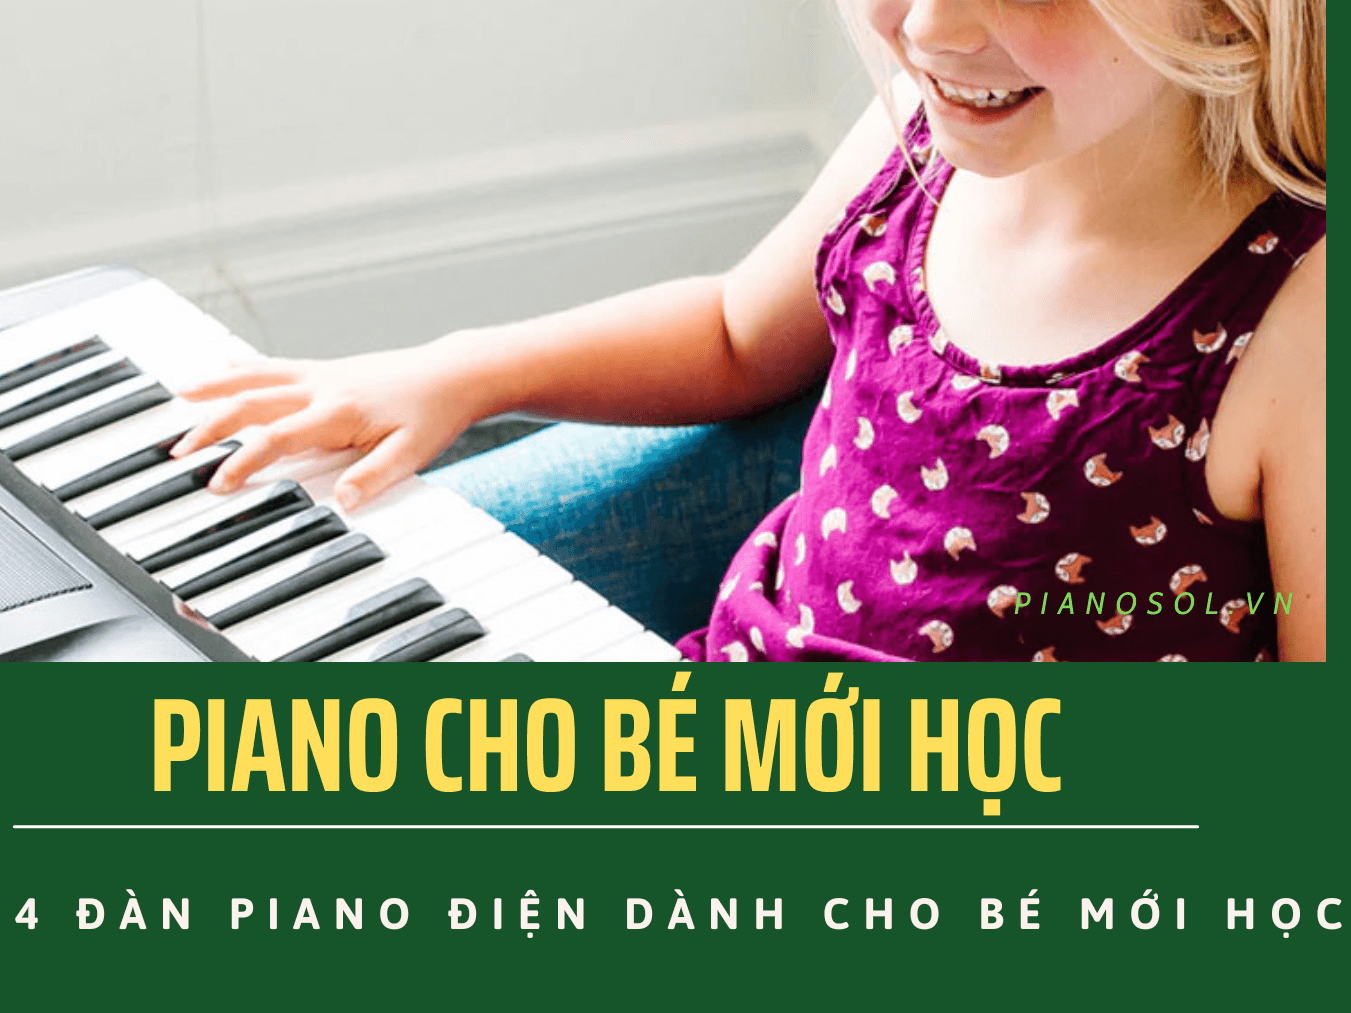 TOP 4 ĐÀN PIANO ĐIỆN DÀNH CHO BÉ MỚI HỌC CHẤT LƯỢNG HIỆN NAY